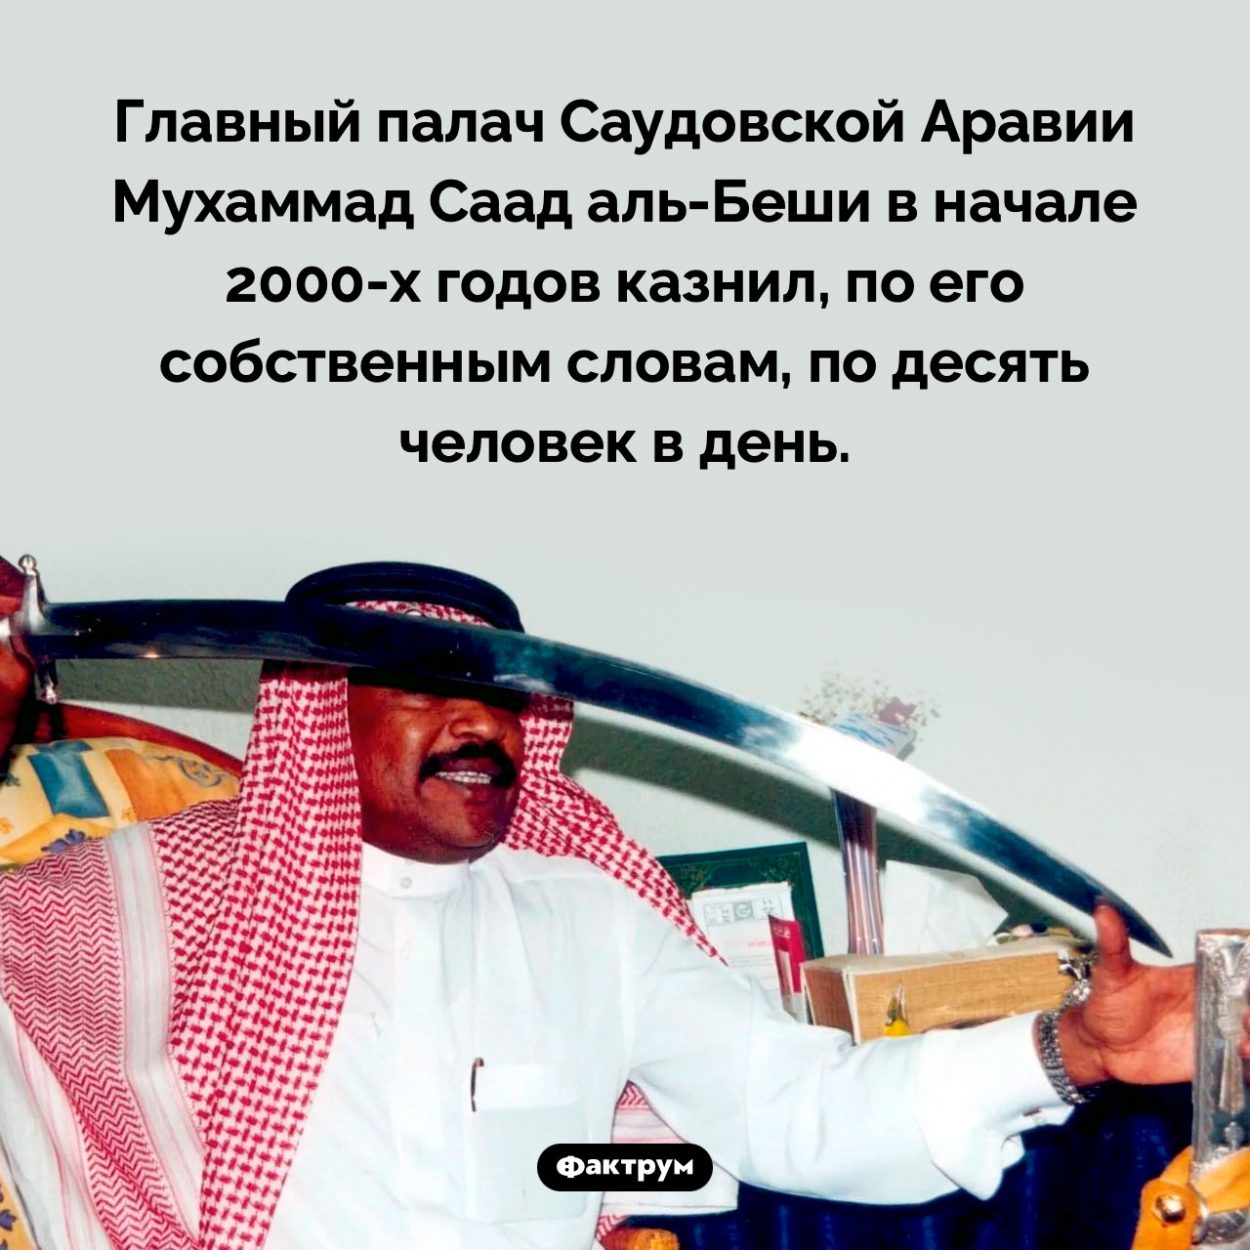 Главный палач Саудовской Аравии. Главный палач Саудовской Аравии Мухаммад Саад аль-Беши в начале 2000-х годов казнил, по его собственным словам, по десять человек в день.